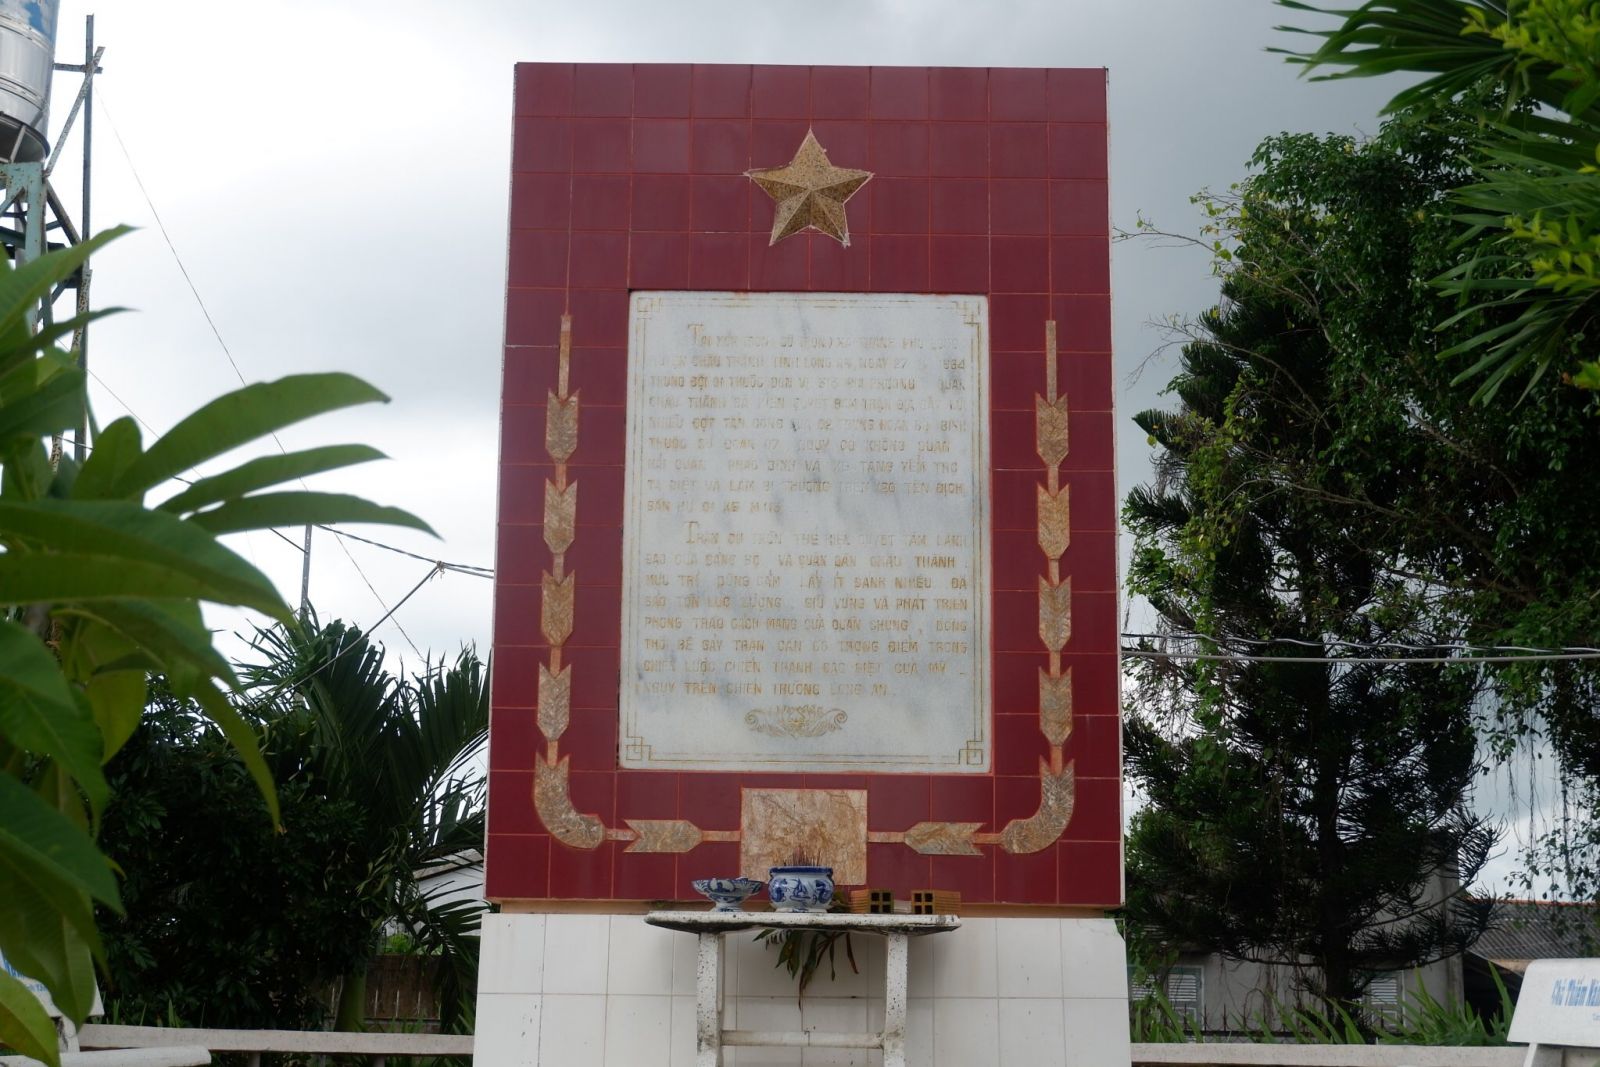 Trong thời gian kháng chiến chống Mỹ - ngụy, Cù Tròn từng là căn cứ địa cách mạng của huyện Châu Thành, đặc biệt với chiến tích đẩy lùi trận càn của Sư đoàn 7 ngụy